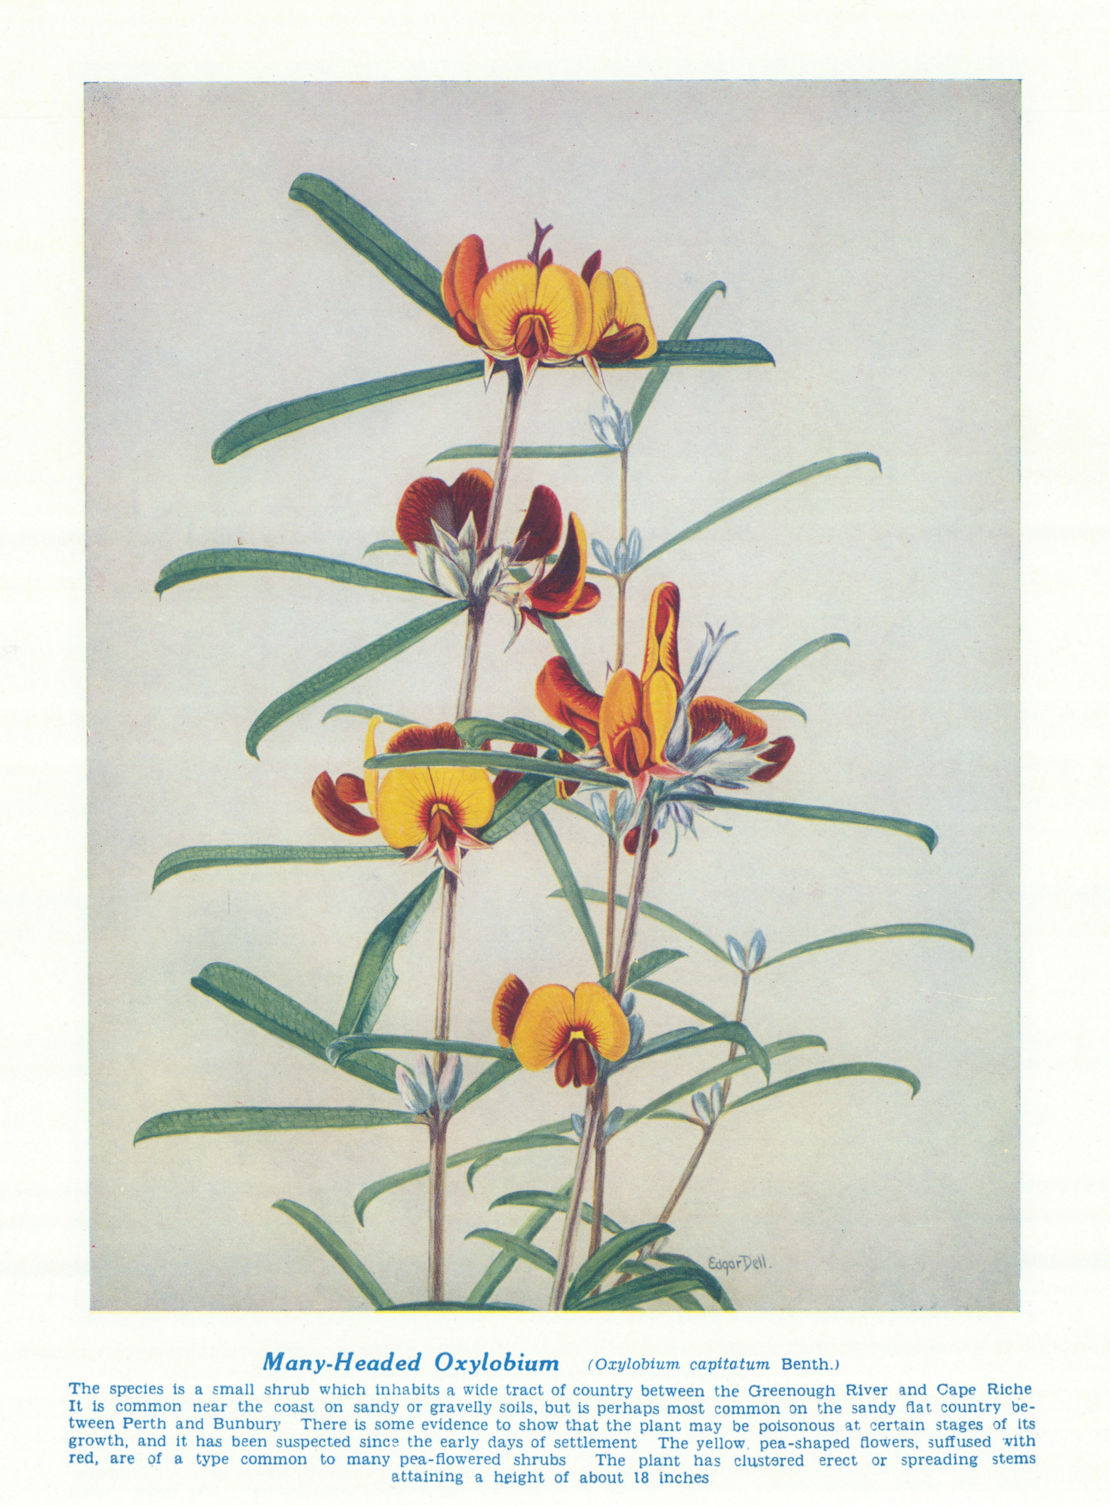 Many-headed Oxylobium (Oxylobium capitatum). West Australian Wild Flowers 1950